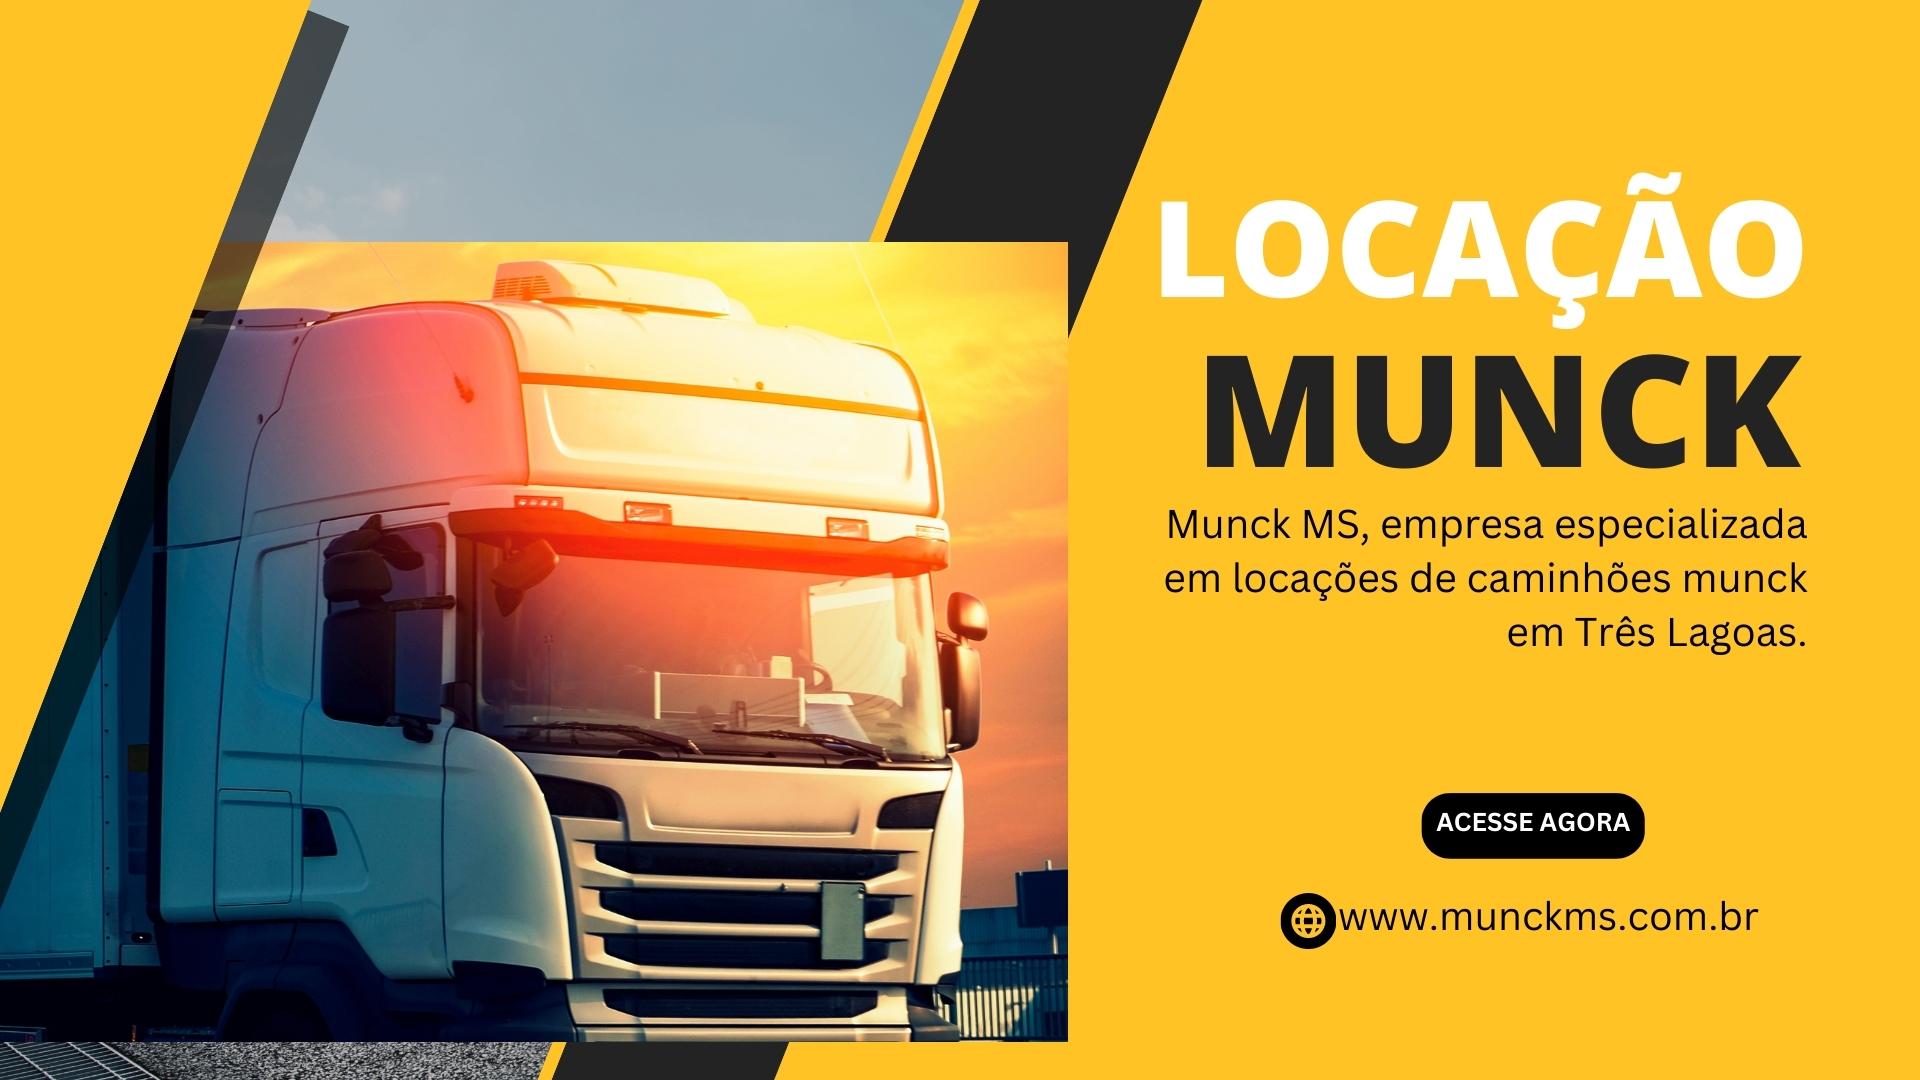 Aluguel de Caminhão Munck: Solução para suas necessidades de locação mensal!